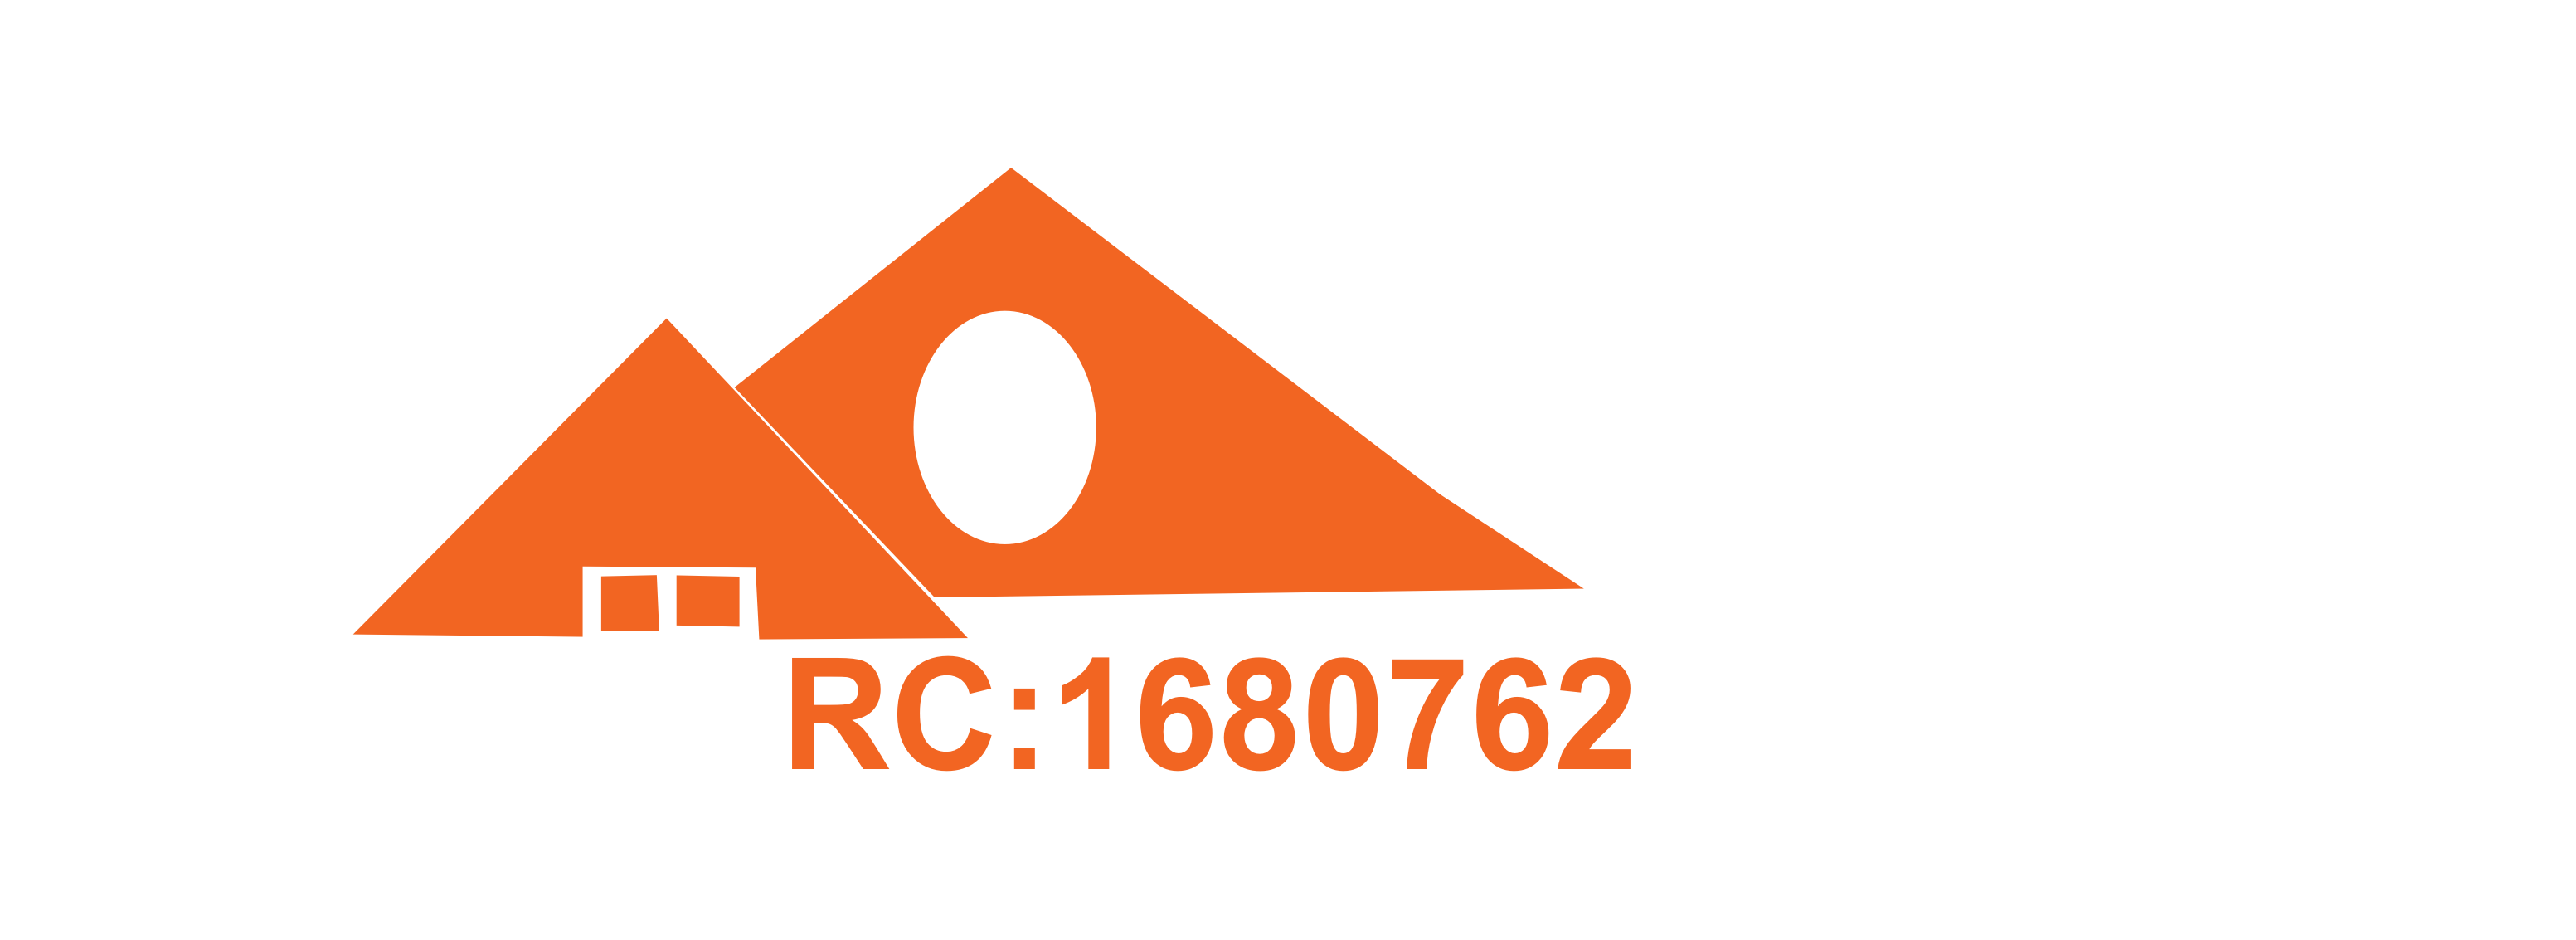 Vindorite Polystyrene Logo